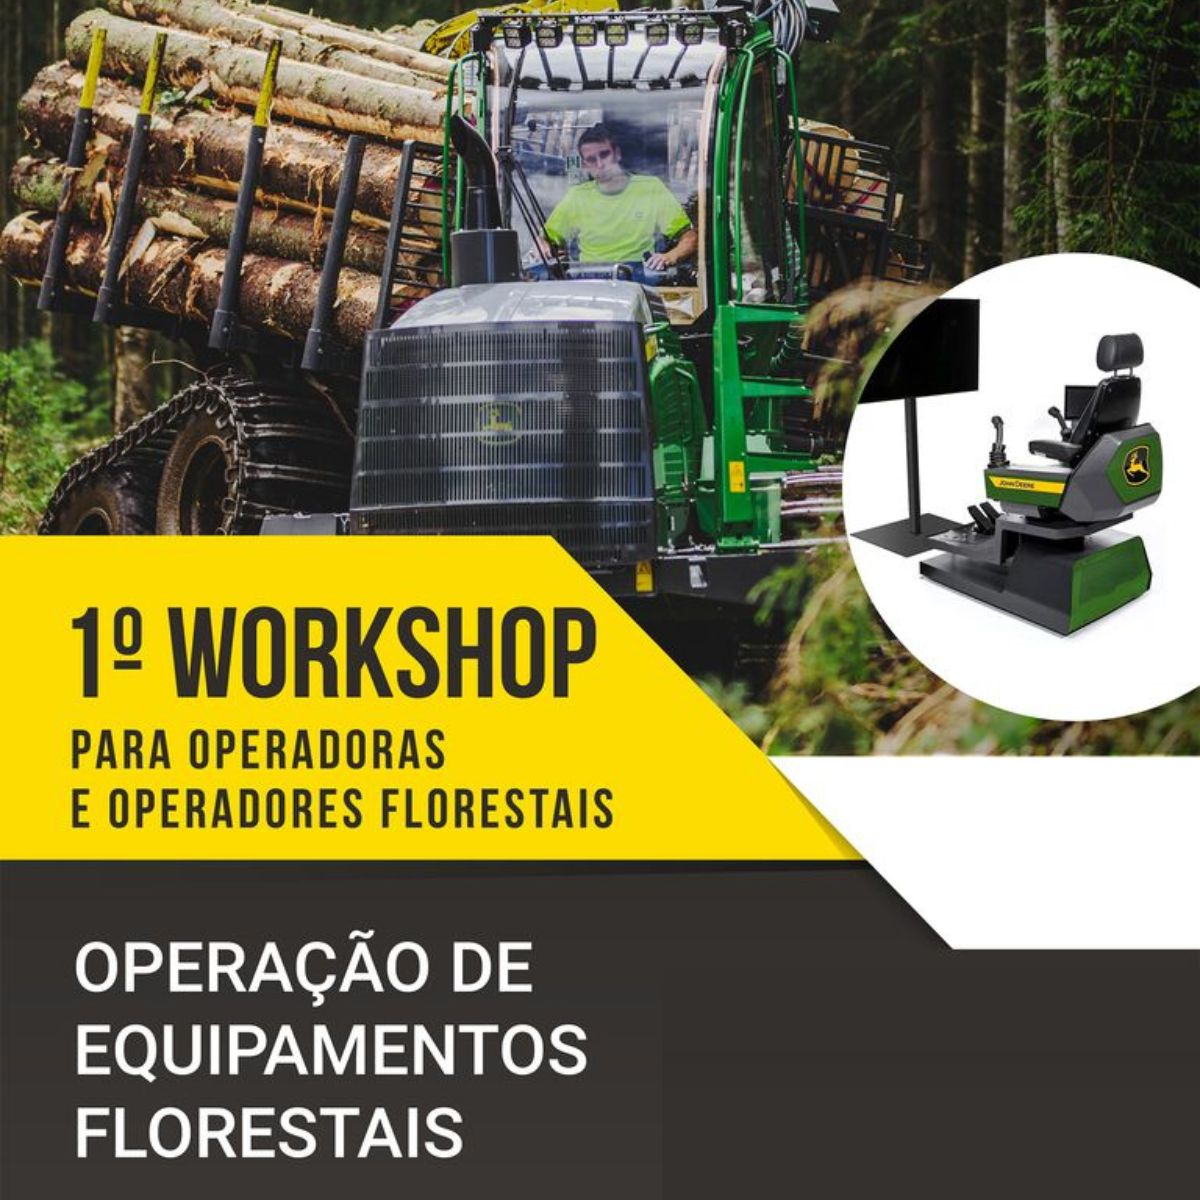 Workshop "Operação de equipamentos florestais"